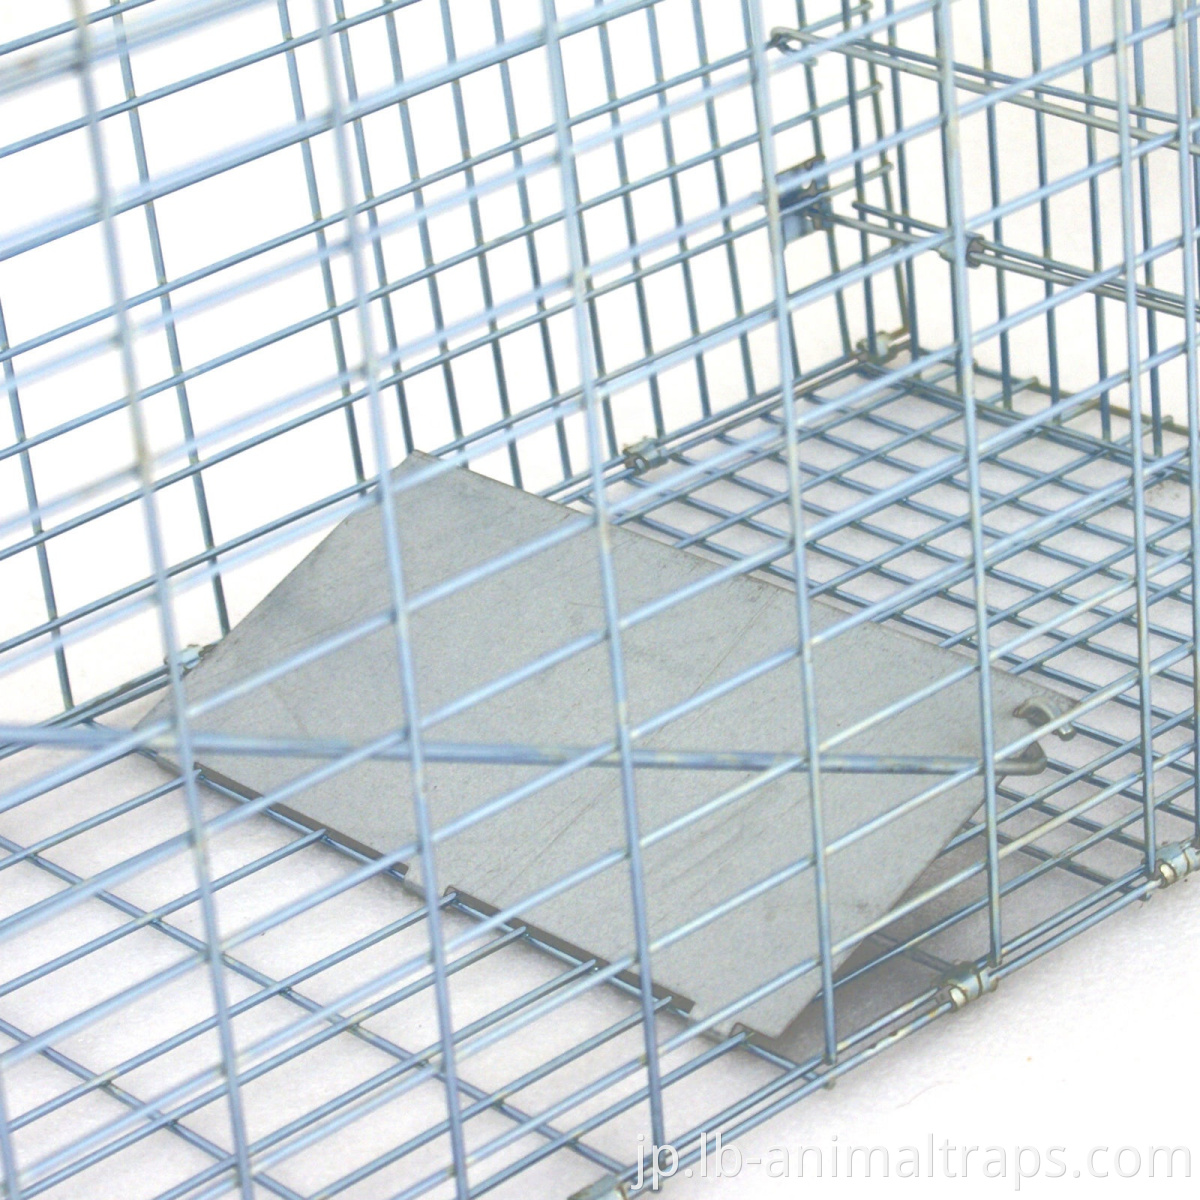 ホットセールLiebang Marten Trap Cages for Sale Factory Supply